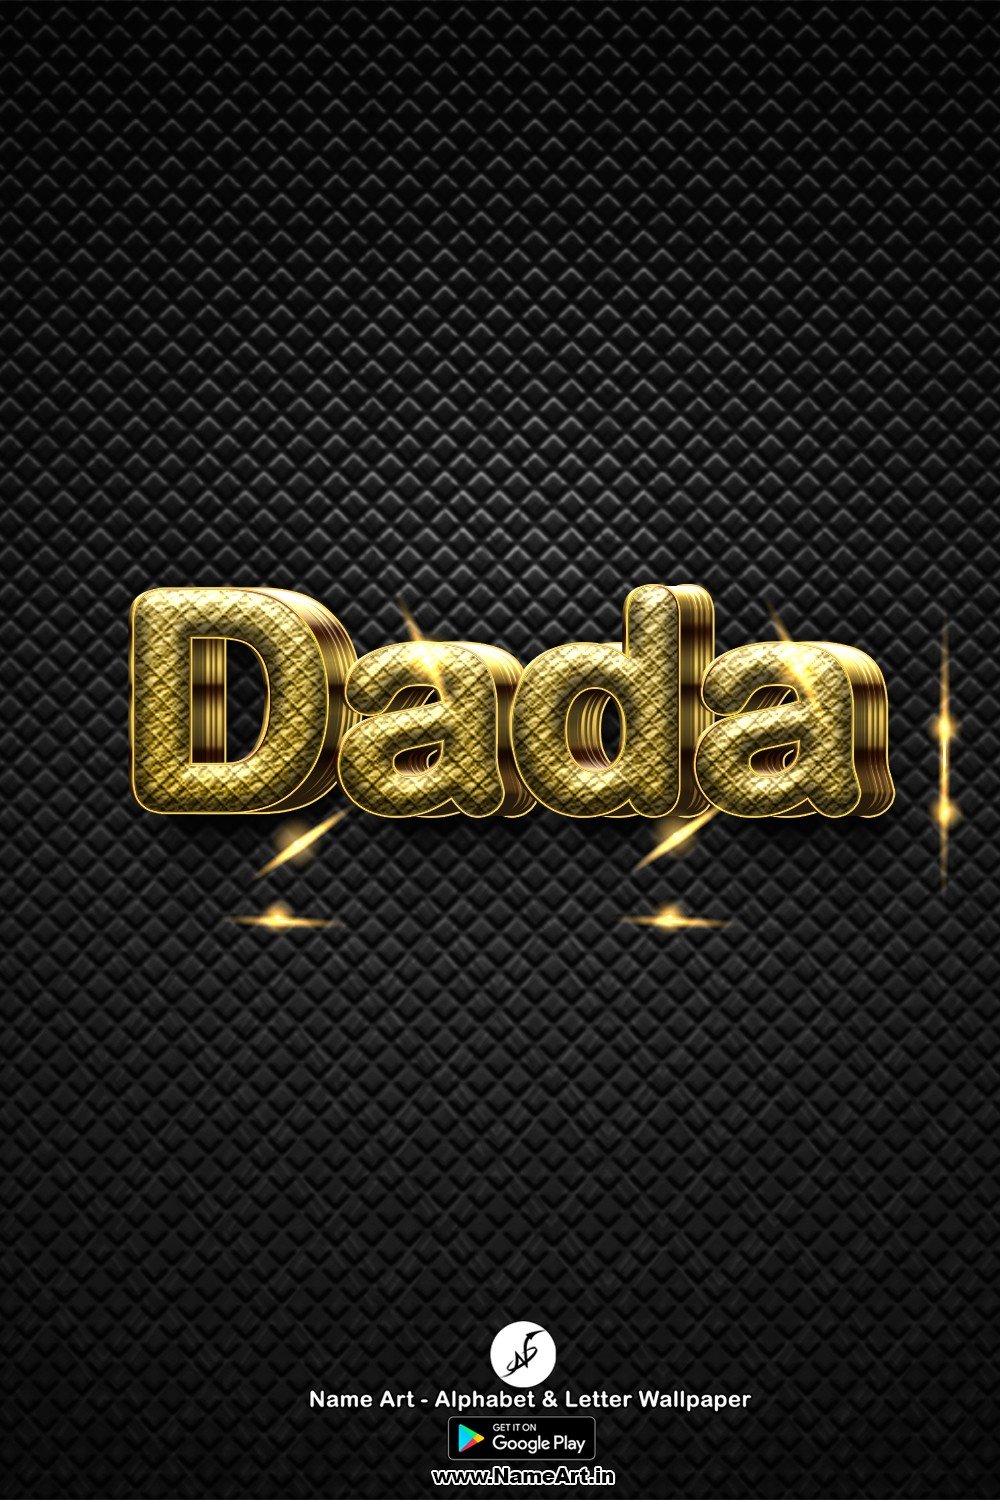 Dada | Whatsapp Status Dada | Happy Birthday Dada !! | New Whatsapp Status Dada Images |